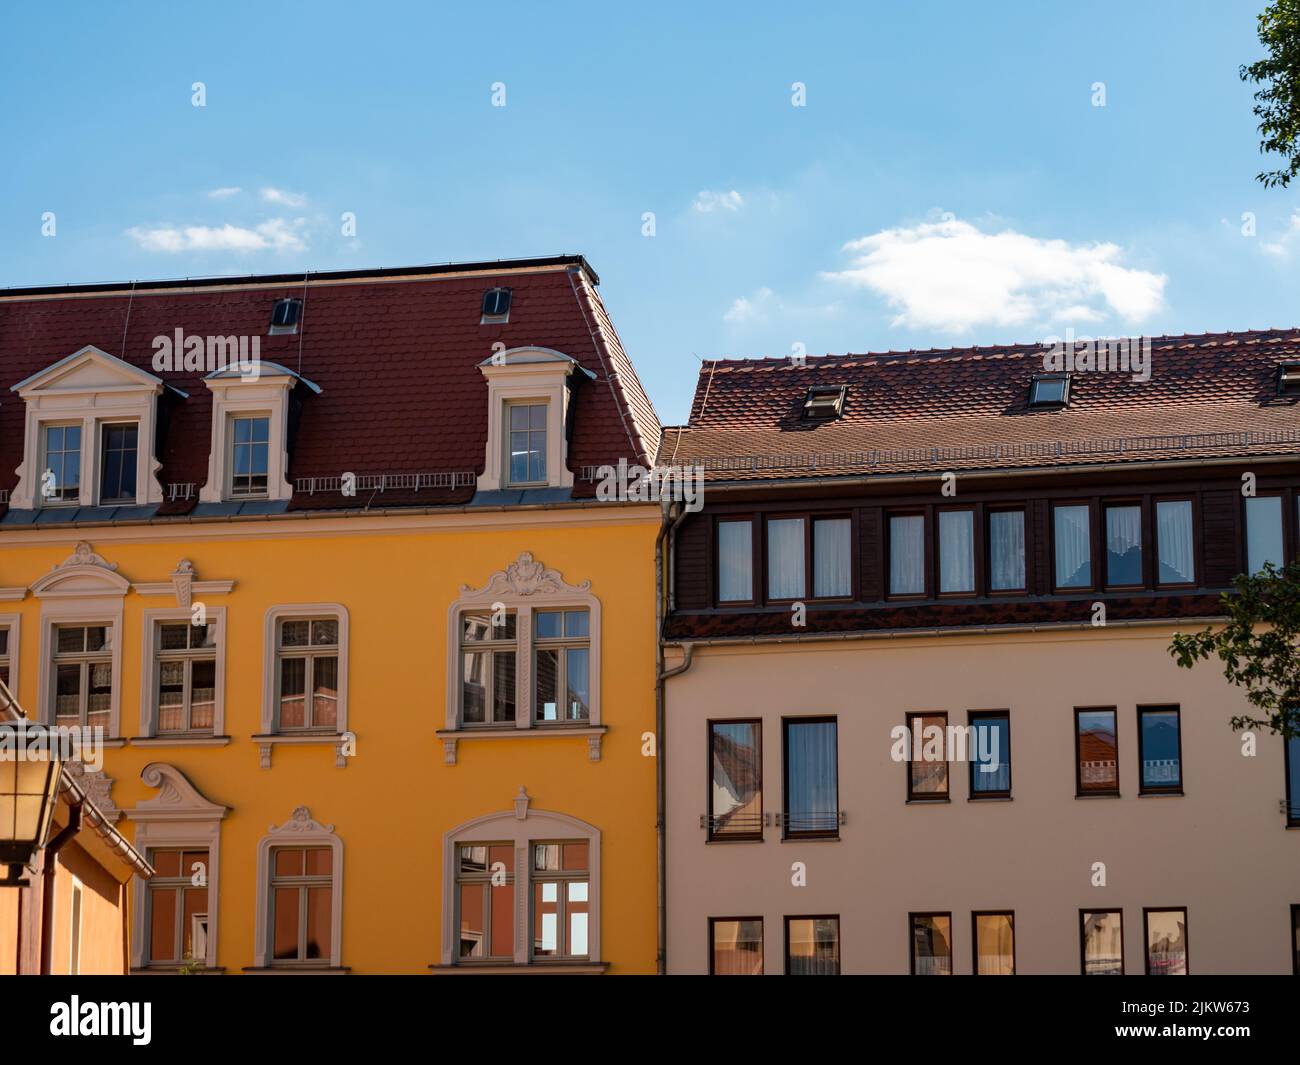 Edifici esterni colorati nella città di Sassonia. Belle facciate in buone condizioni. I finestrini riflettono la luce. Bella vecchia architettura. Foto Stock